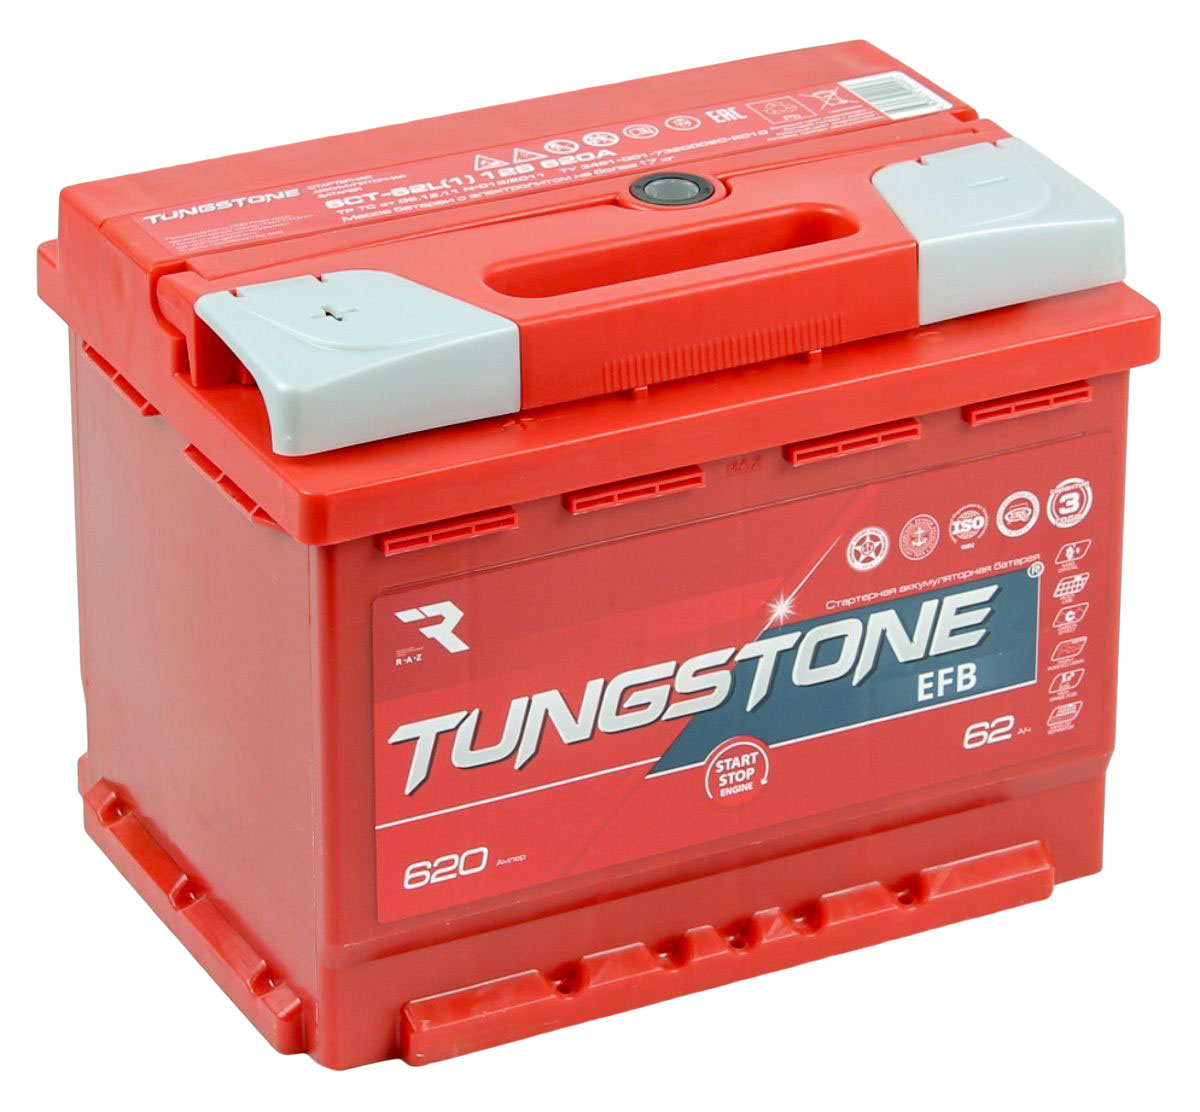 Аккумулятор автомобильный краснодар. Tungstone EFB 6ст -77.0. Tungstone аккумуляторы 60 Ач. Tungstone EFB 6ст -62.0. EFB 6ct-60.0.